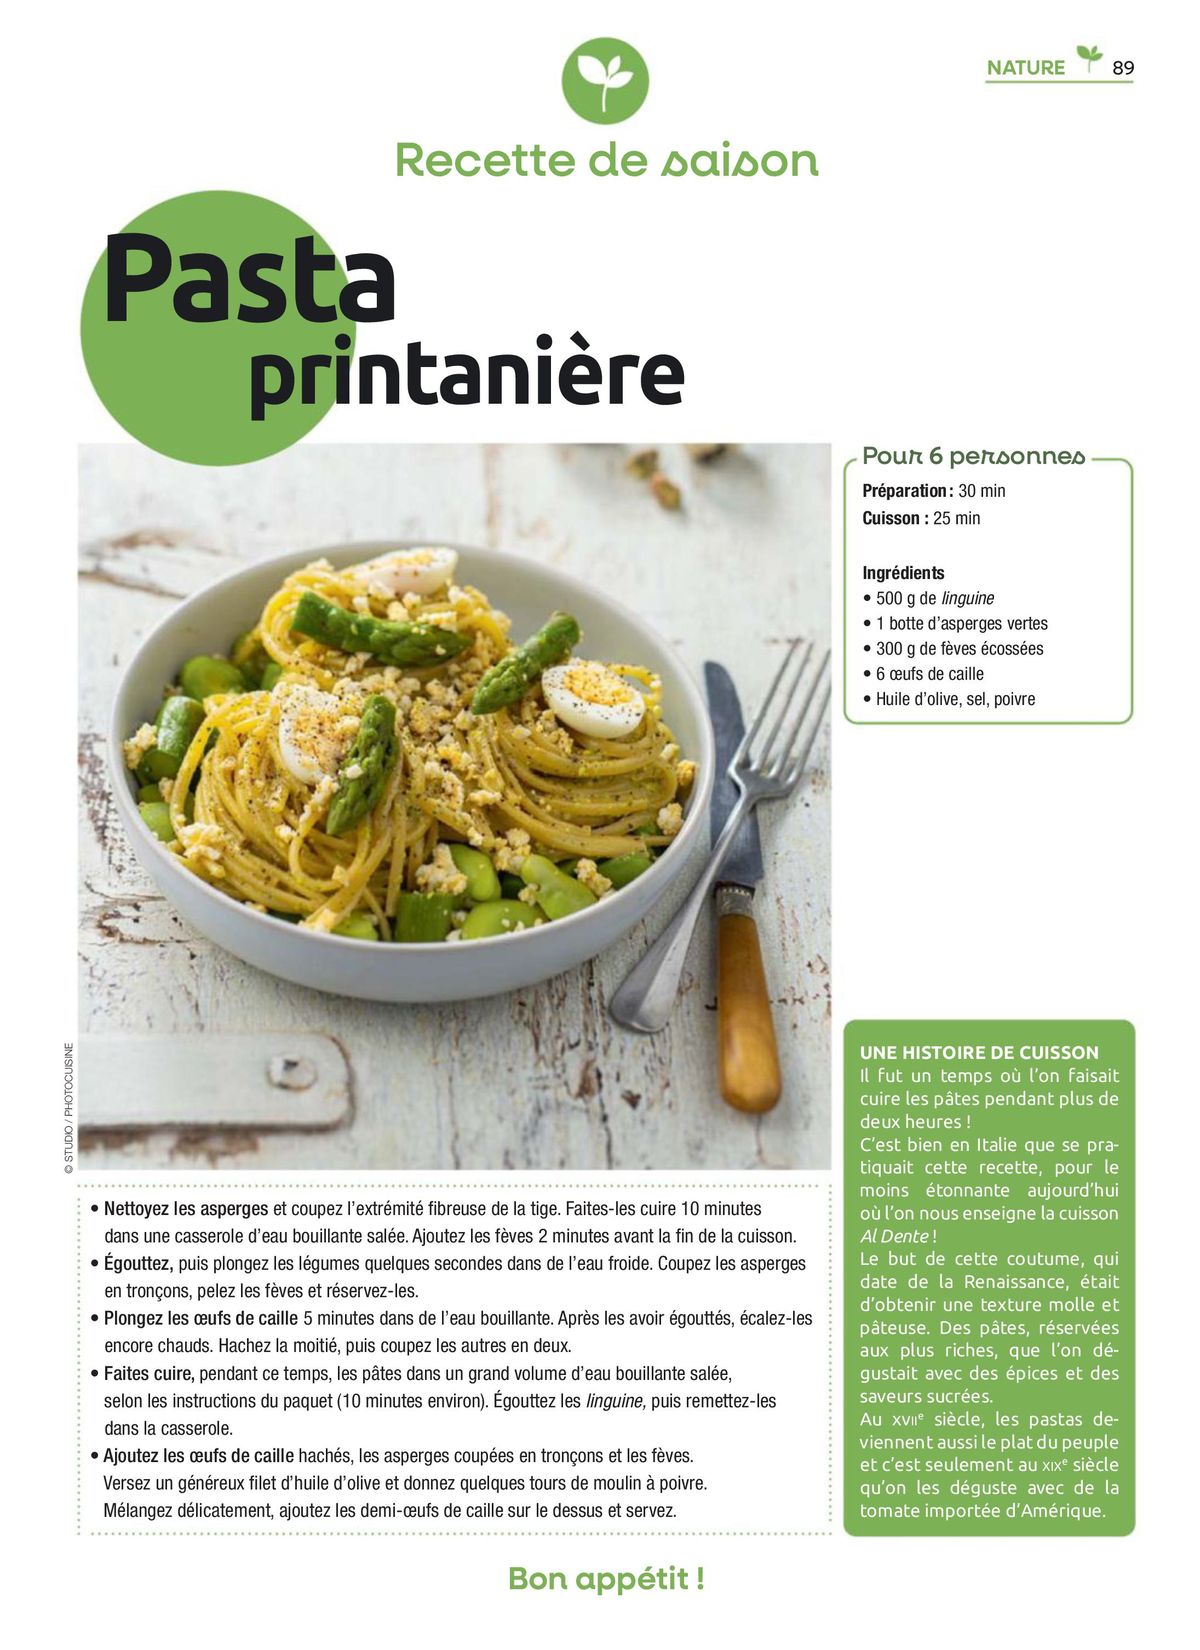 Catalogue Feuilletez Entre Voisins, page 00089